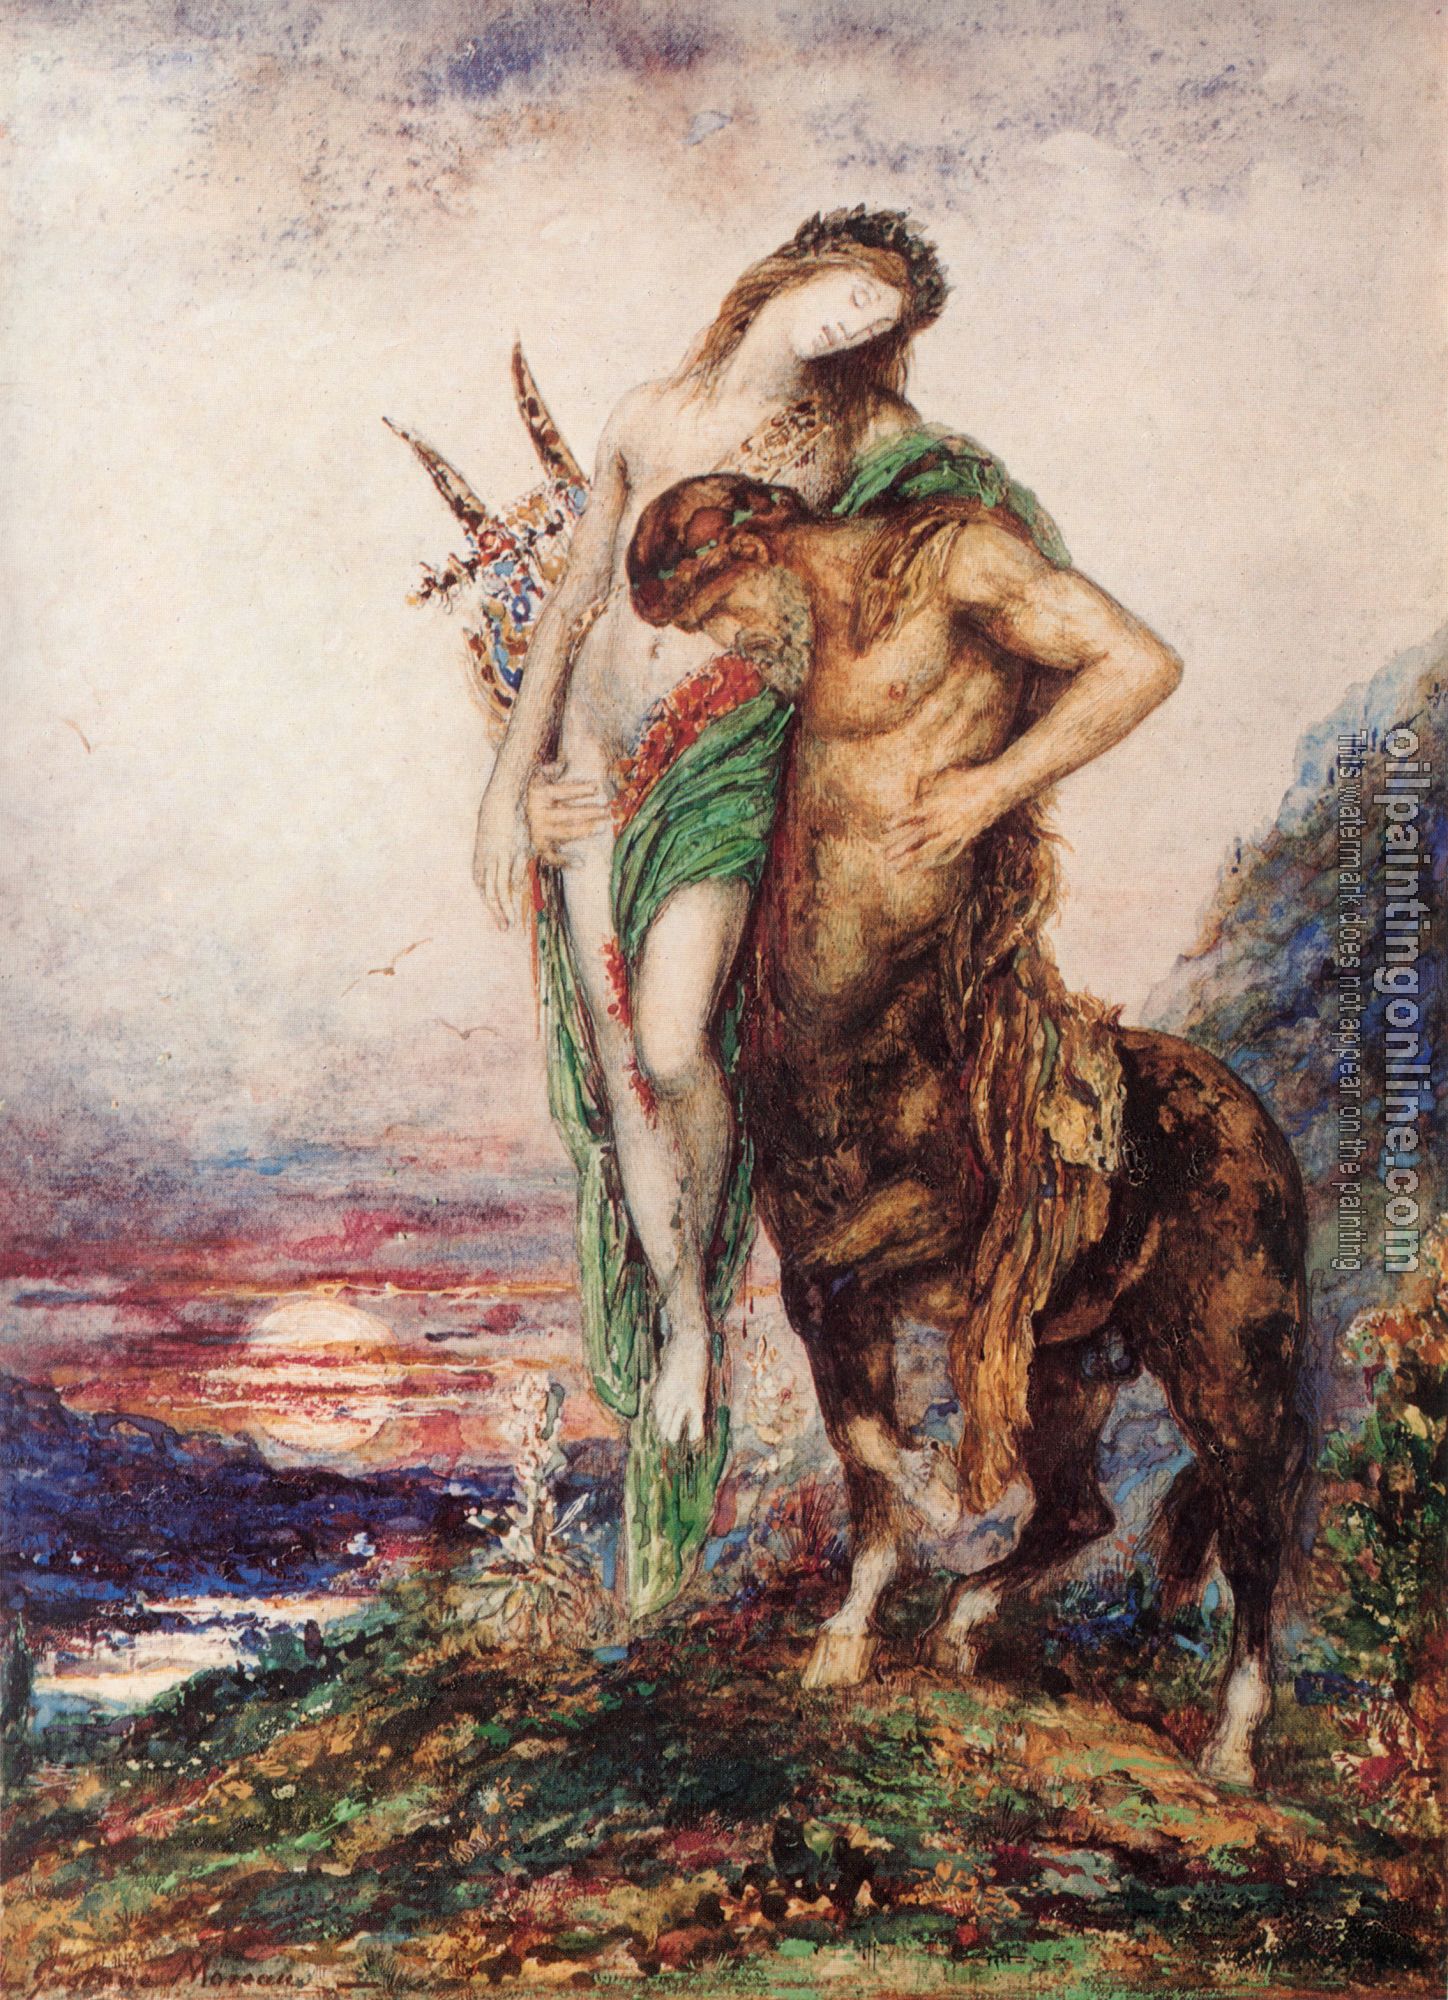 Moreau, Gustave - The Dead Poet Borne by a Centaur(Poete mort porte par un centaure)